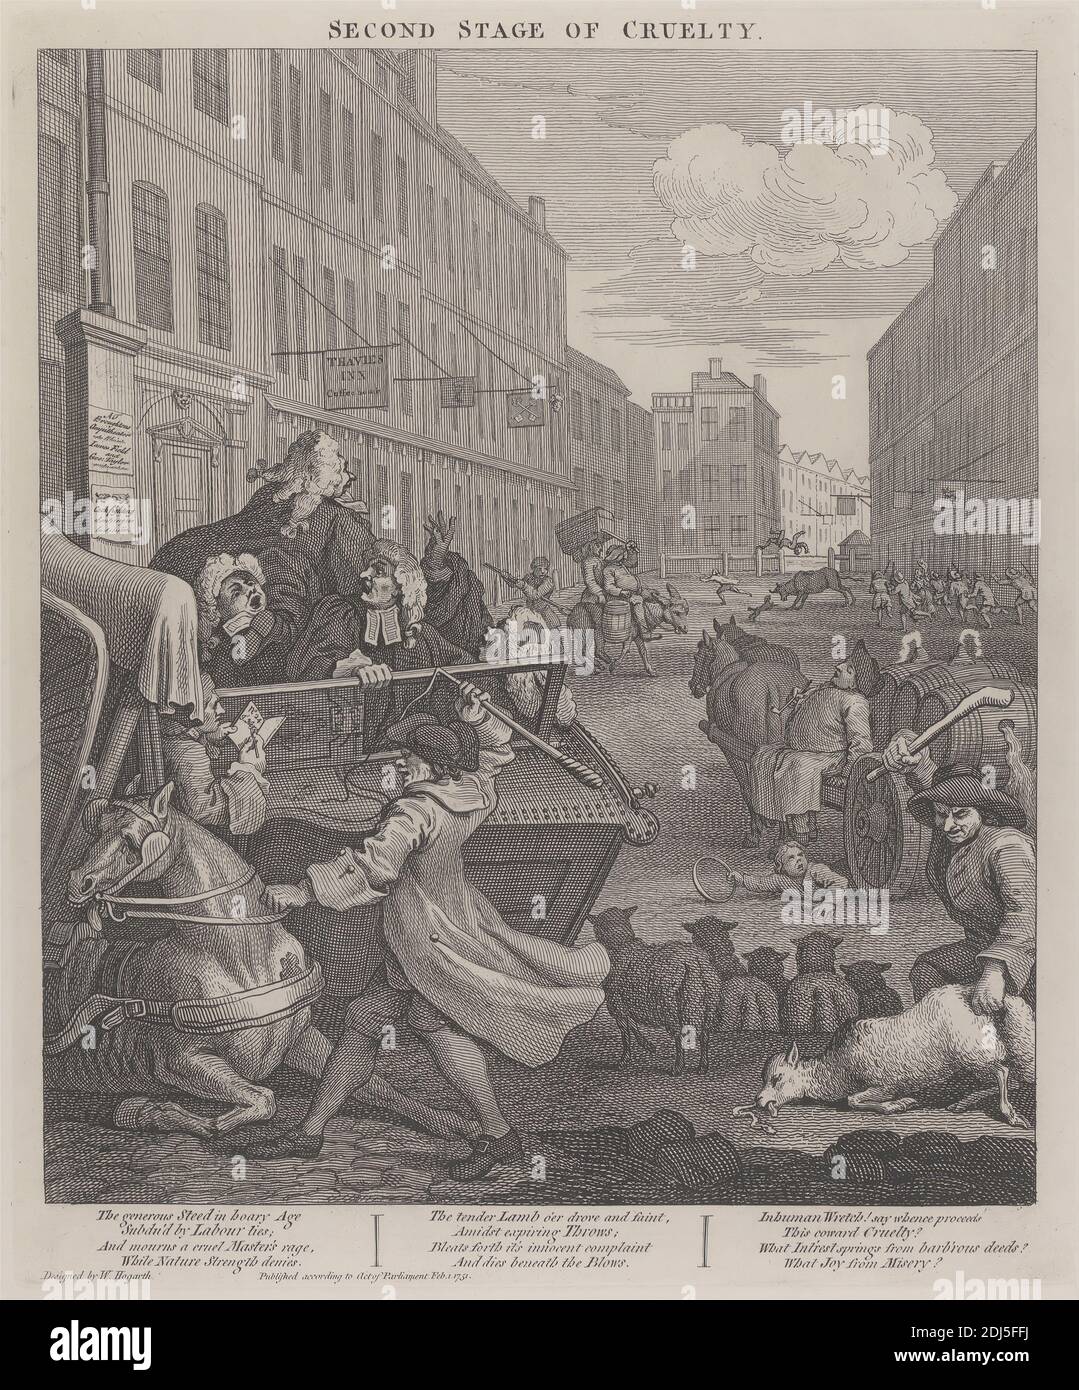 La deuxième étape de la cruauté : Coachman battant un cheval tombé, imprimé par William Hogarth, 1697–1764, British, 1751, imprimé en 1790, gravure en ligne sur papier épais, blanc, lisse, feuille: 24 7/8 x 19 1/4 pouces (63.2 x 48.9 cm), plaque: 15 1/4 x 12 3/4 pouces (38.7 x 32.4 cm), et image: 13 3/4 x 11 7/8 pouces (34.9 x 30.2 cm), barils, taureau, chariot, paysage urbain, entraîneur, coachman, cruauté, âne, genre sujet, cupidité, cheval (animal), auberge, avocats, hommes, moutons, signes, rue, taverne, torture, violence, gallois, Angleterre, Europe, Londres, Royaume-Uni Banque D'Images